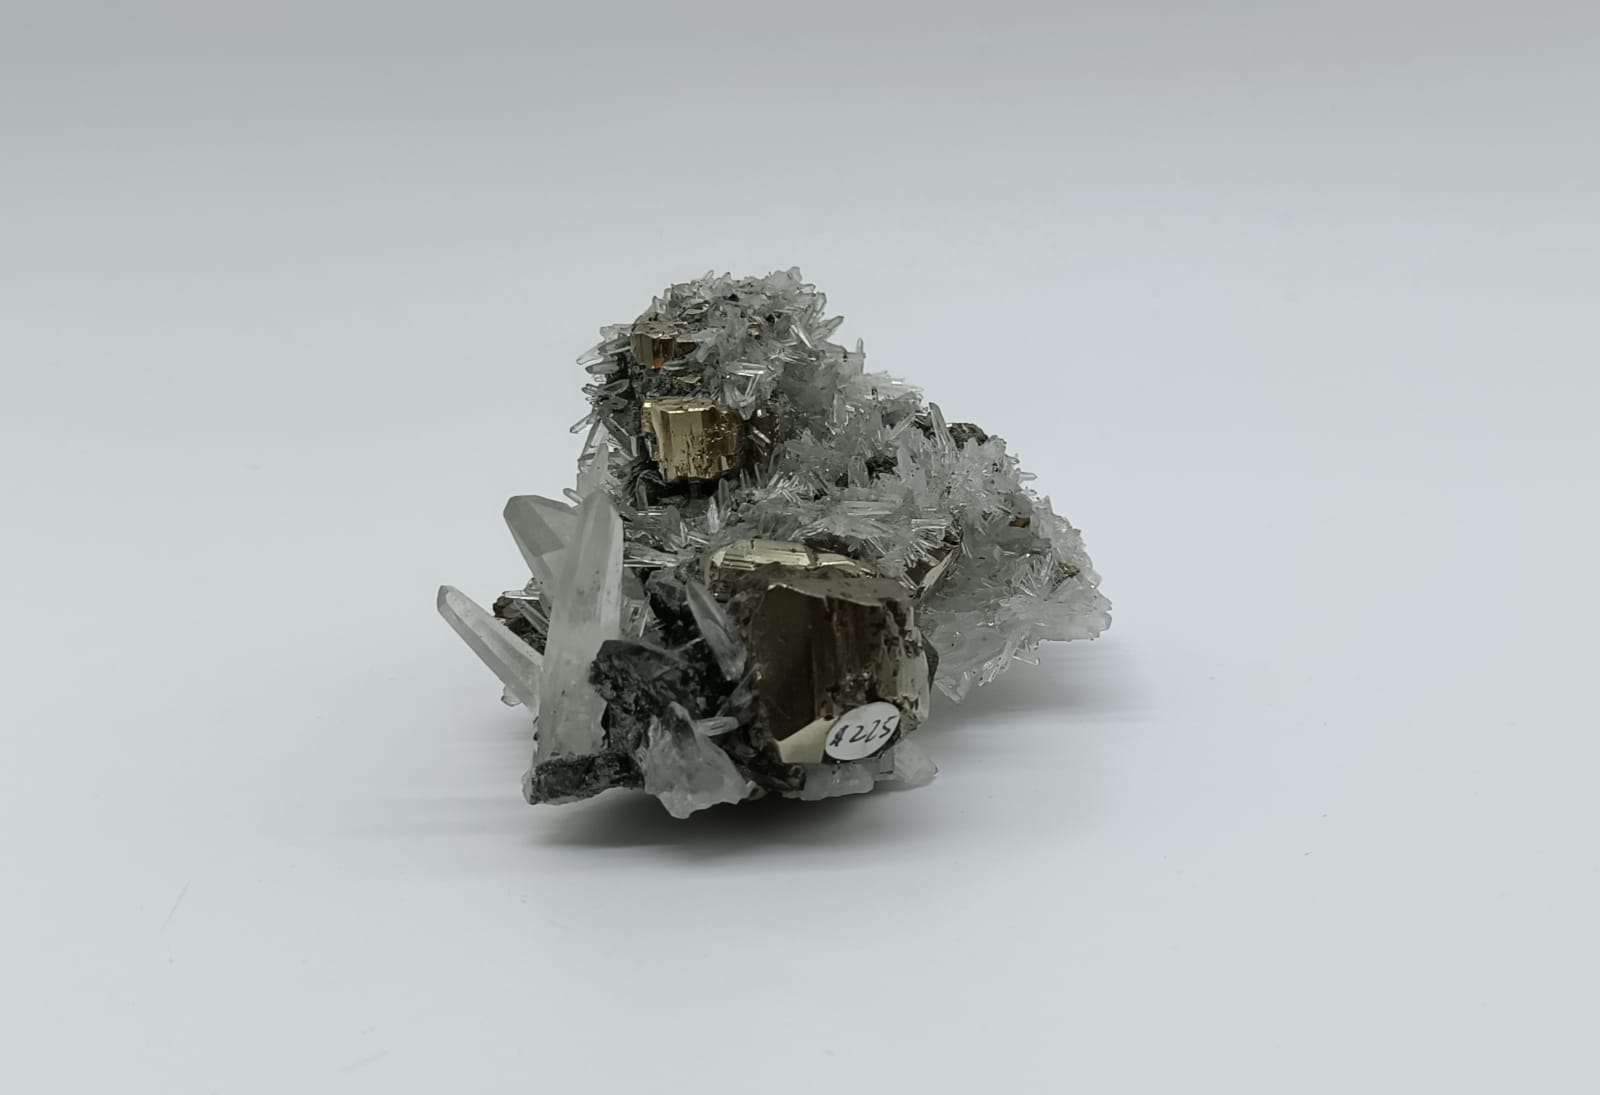 Pyrite in Quartz Cluster 224 Grams